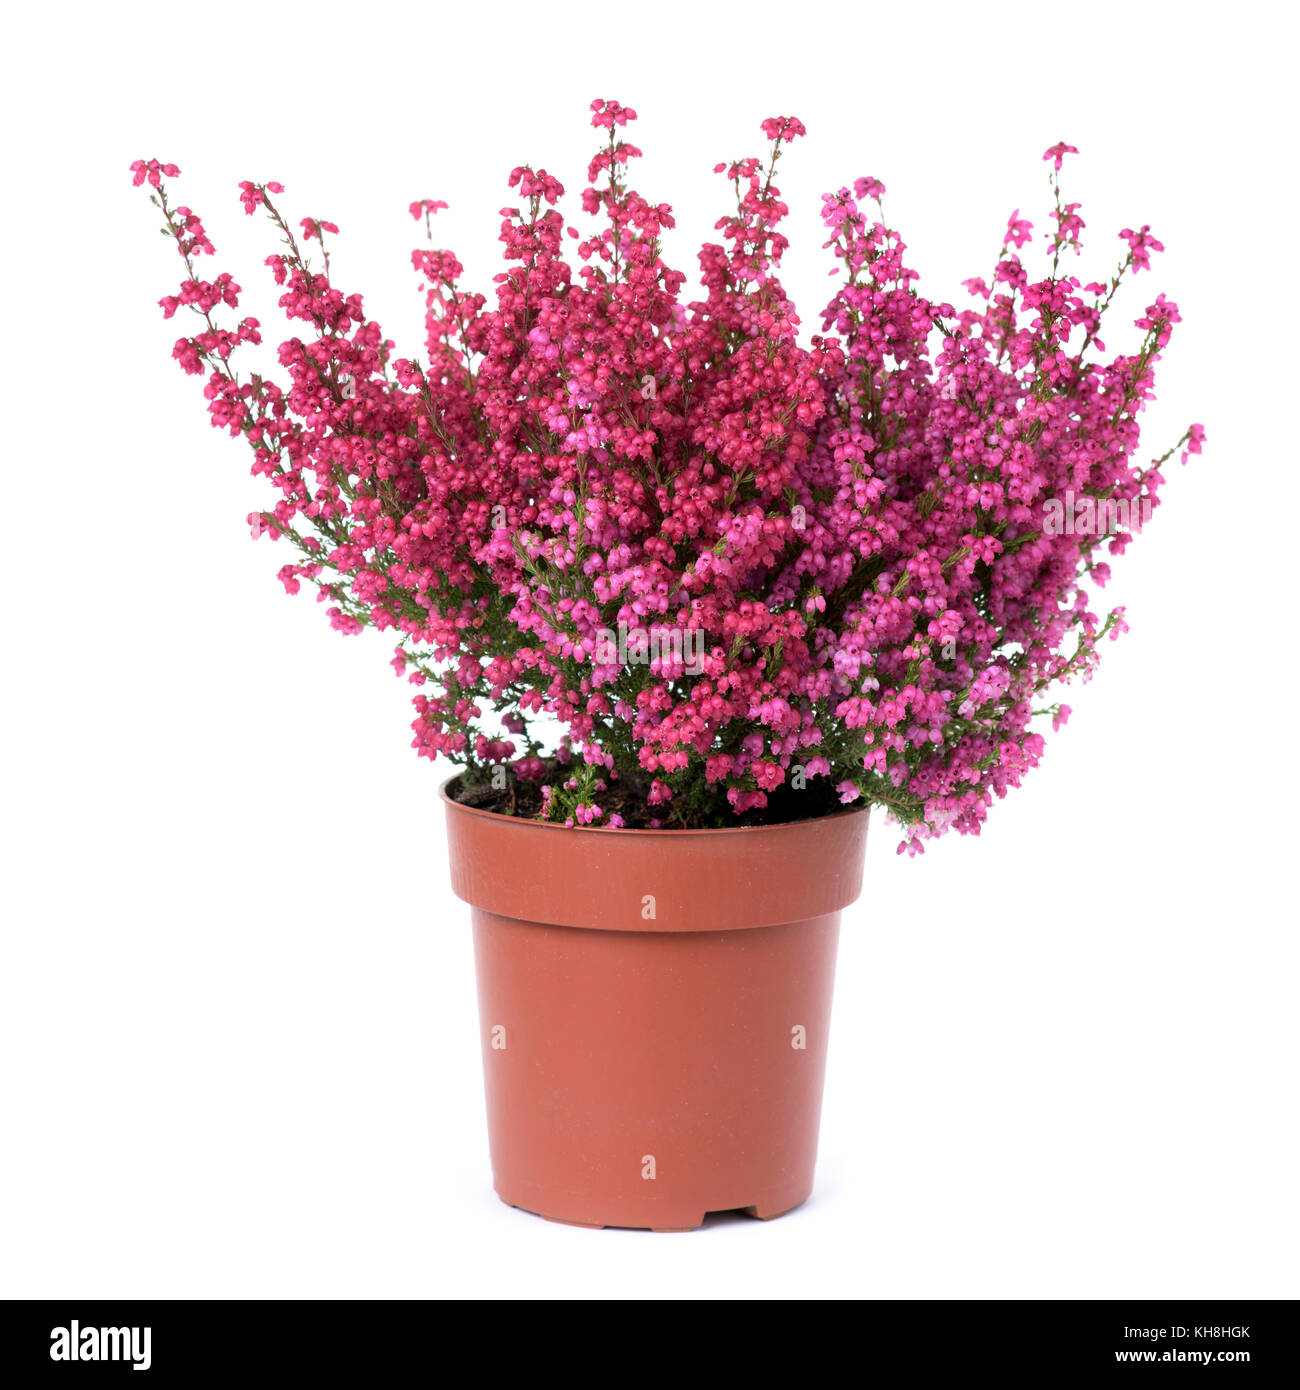 Heather Bell une plante à fleurs roses dans un pot en plastique marron, sur un fond blanc Banque D'Images